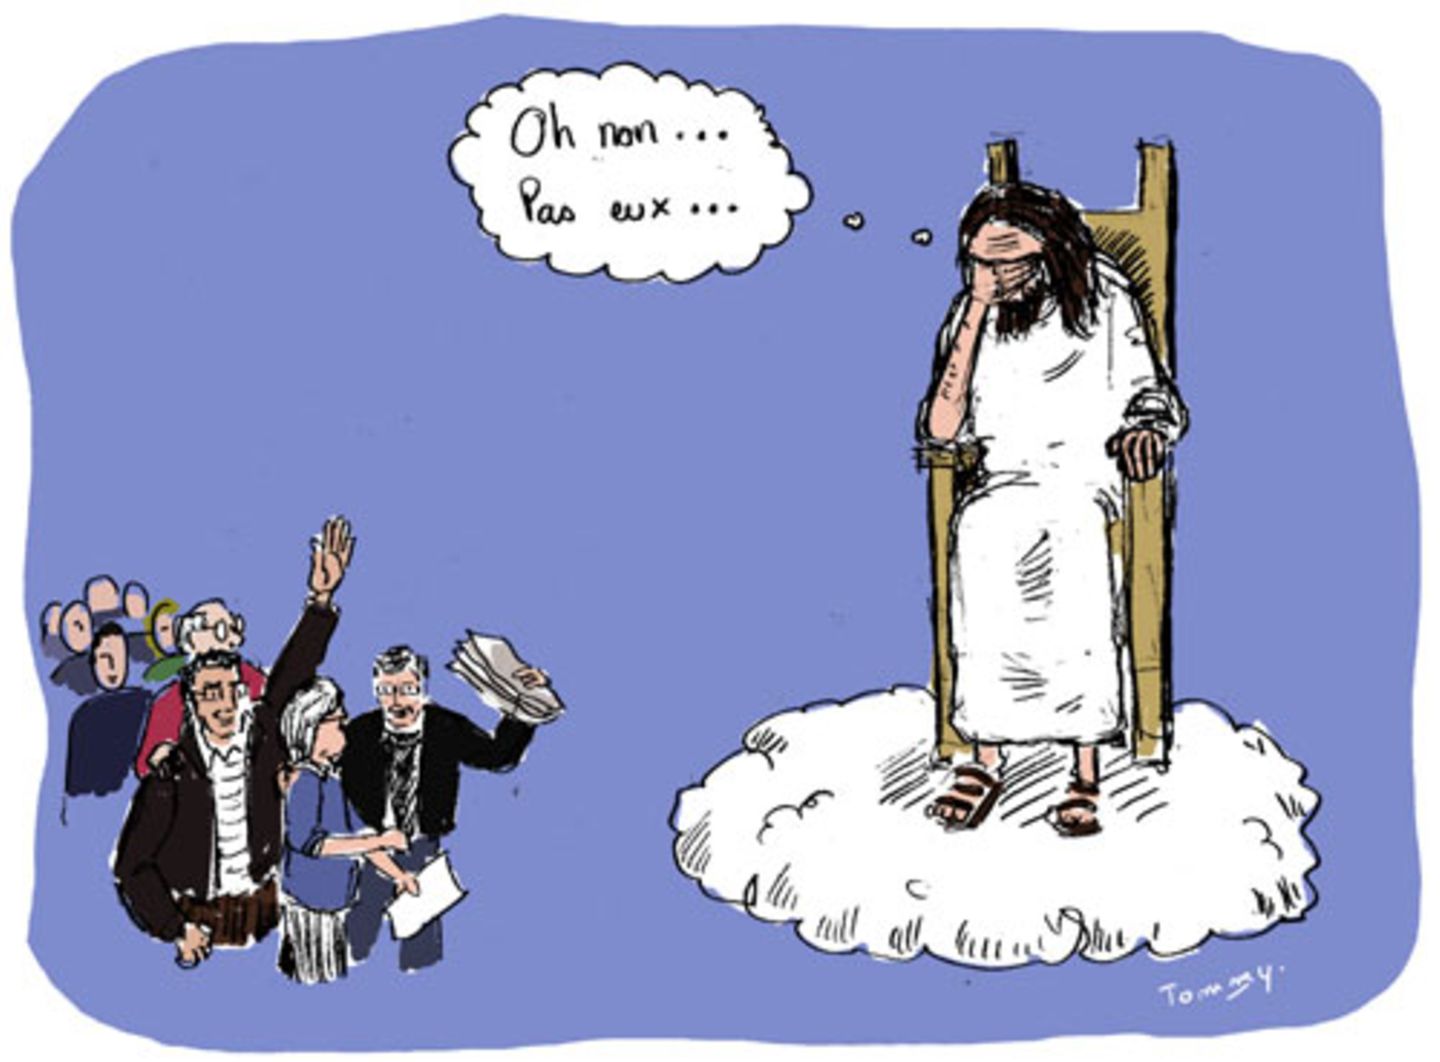 Tommy Dessine kommentiert die Tragödie - ganz im Stil von "Charlie Hebdo" - bissig und biblisch. In der Gedankenblase steht: "Oh nein.. nicht die..".